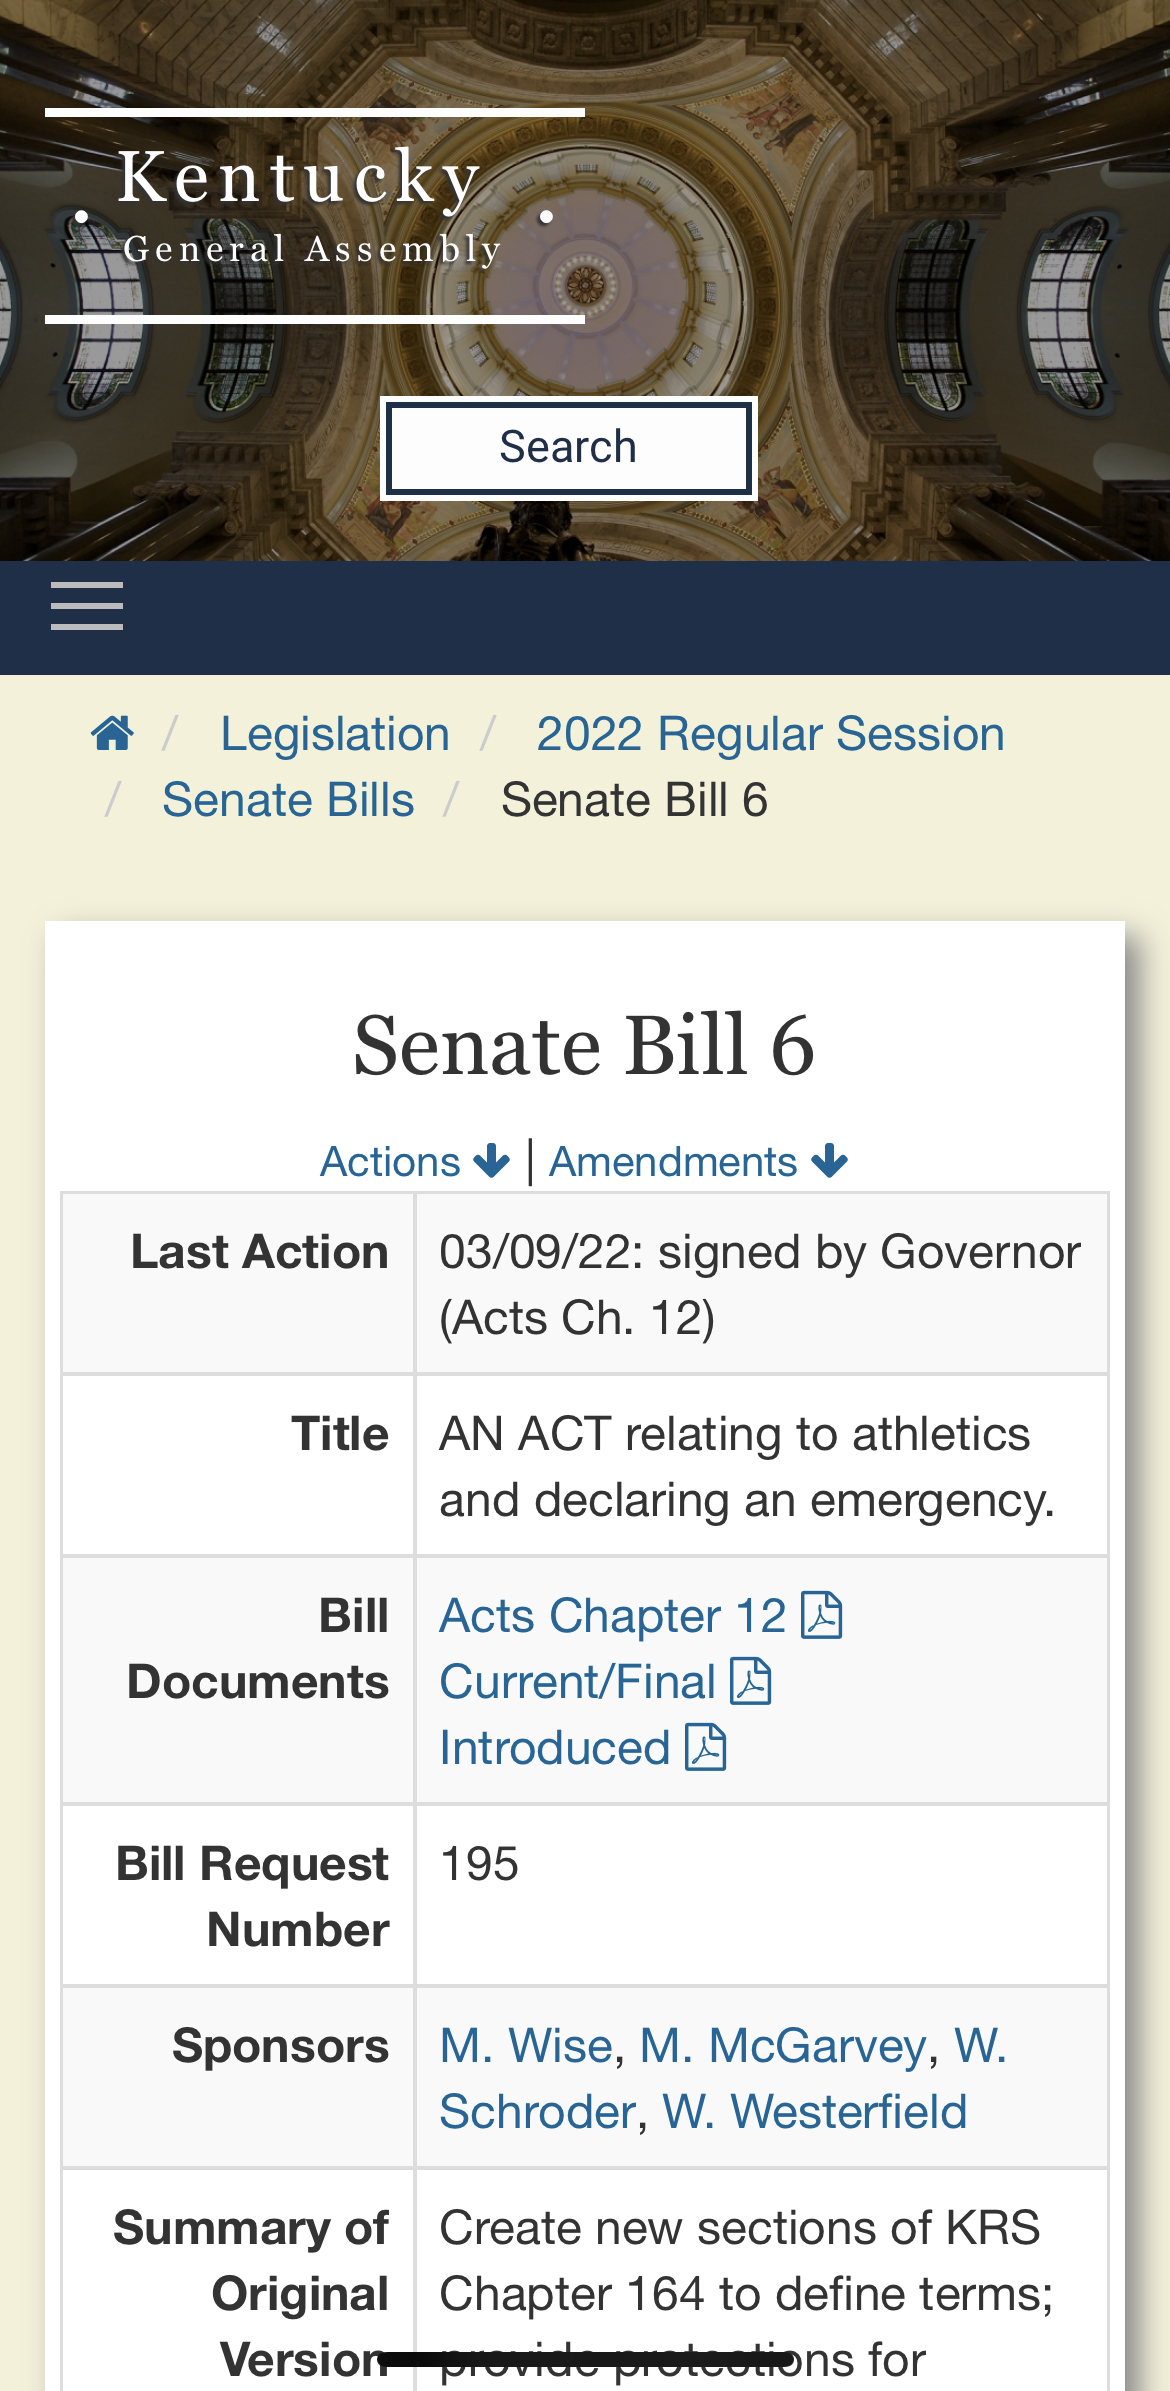 Senate Bill 6 relating to NIL